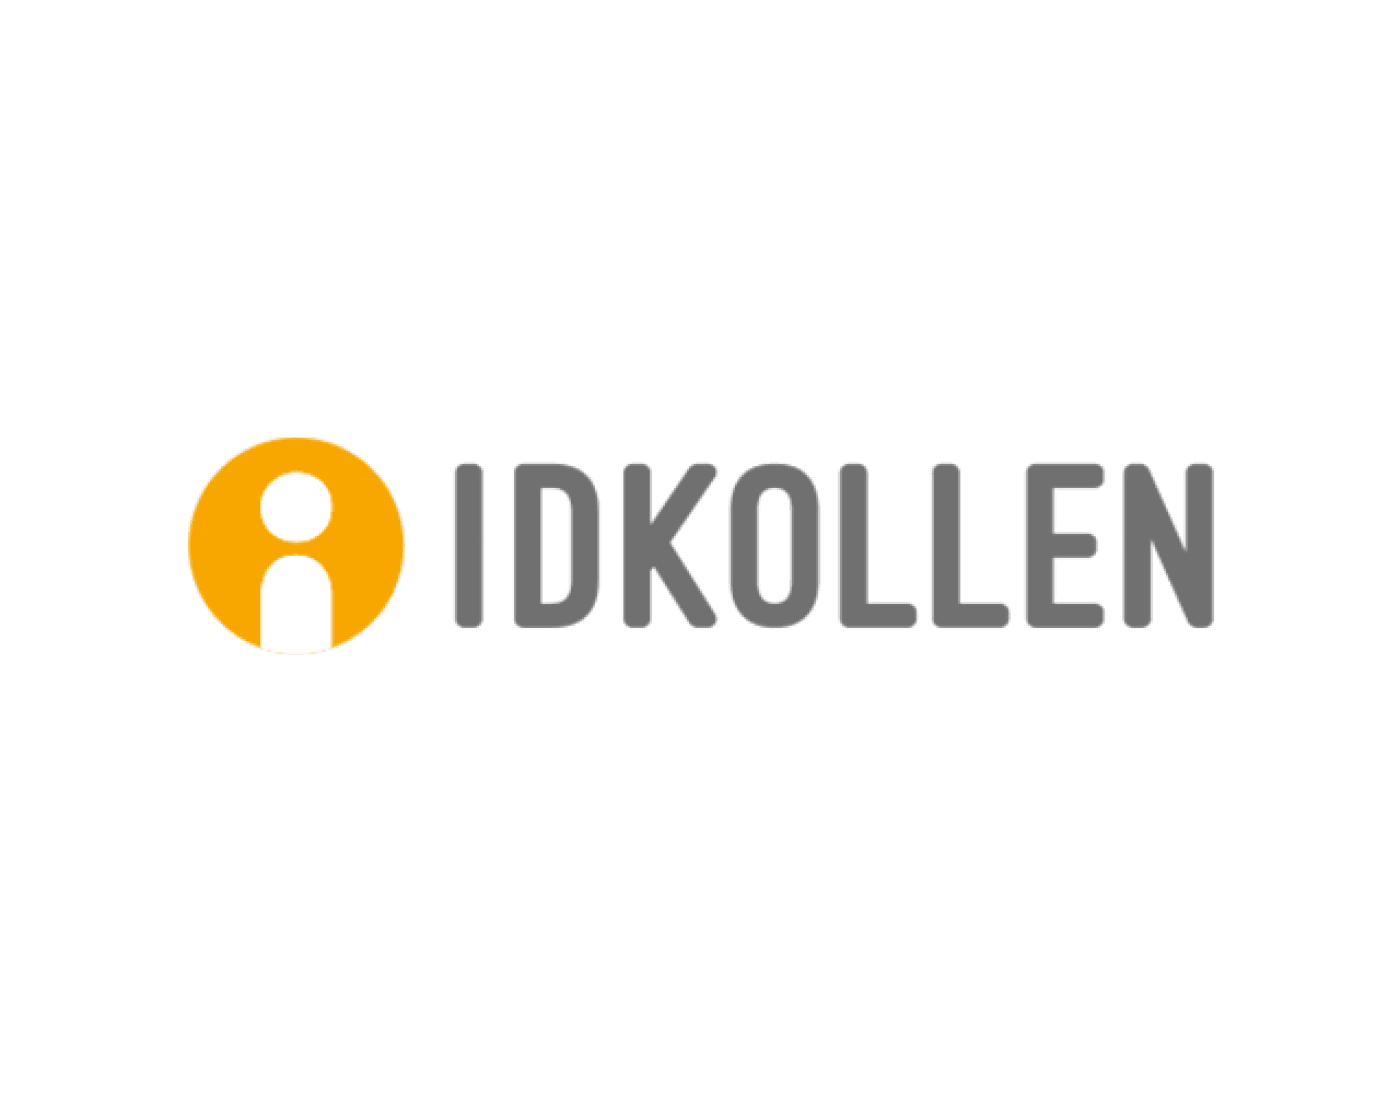 id-kollen-640x500-01.png